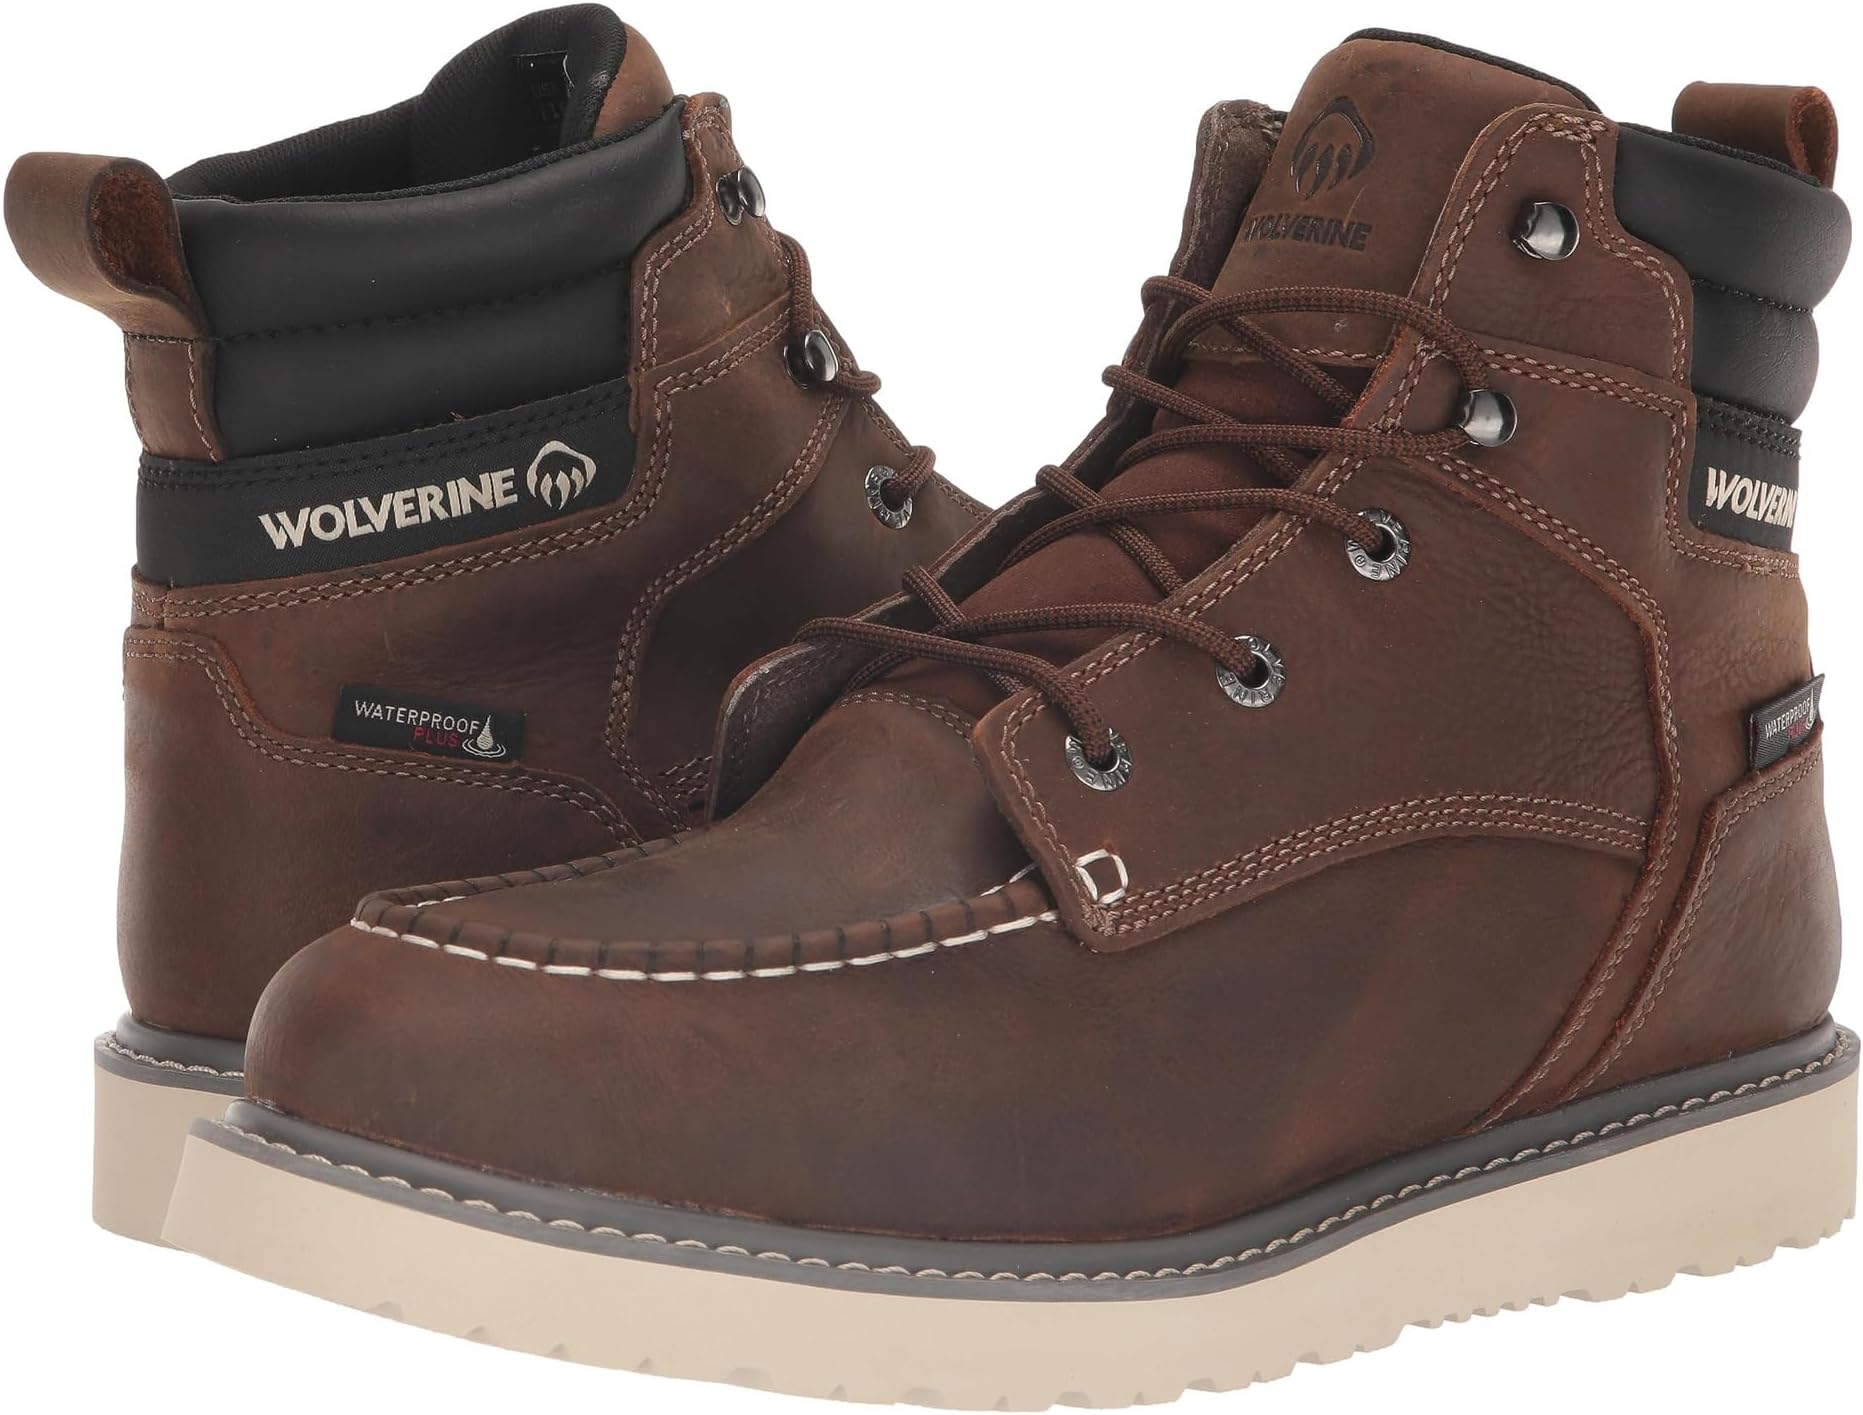 Рабочая обувь водонепроницаемая Trade Wedge Waterproof 6 Wolverine, цвет Sudan Brown